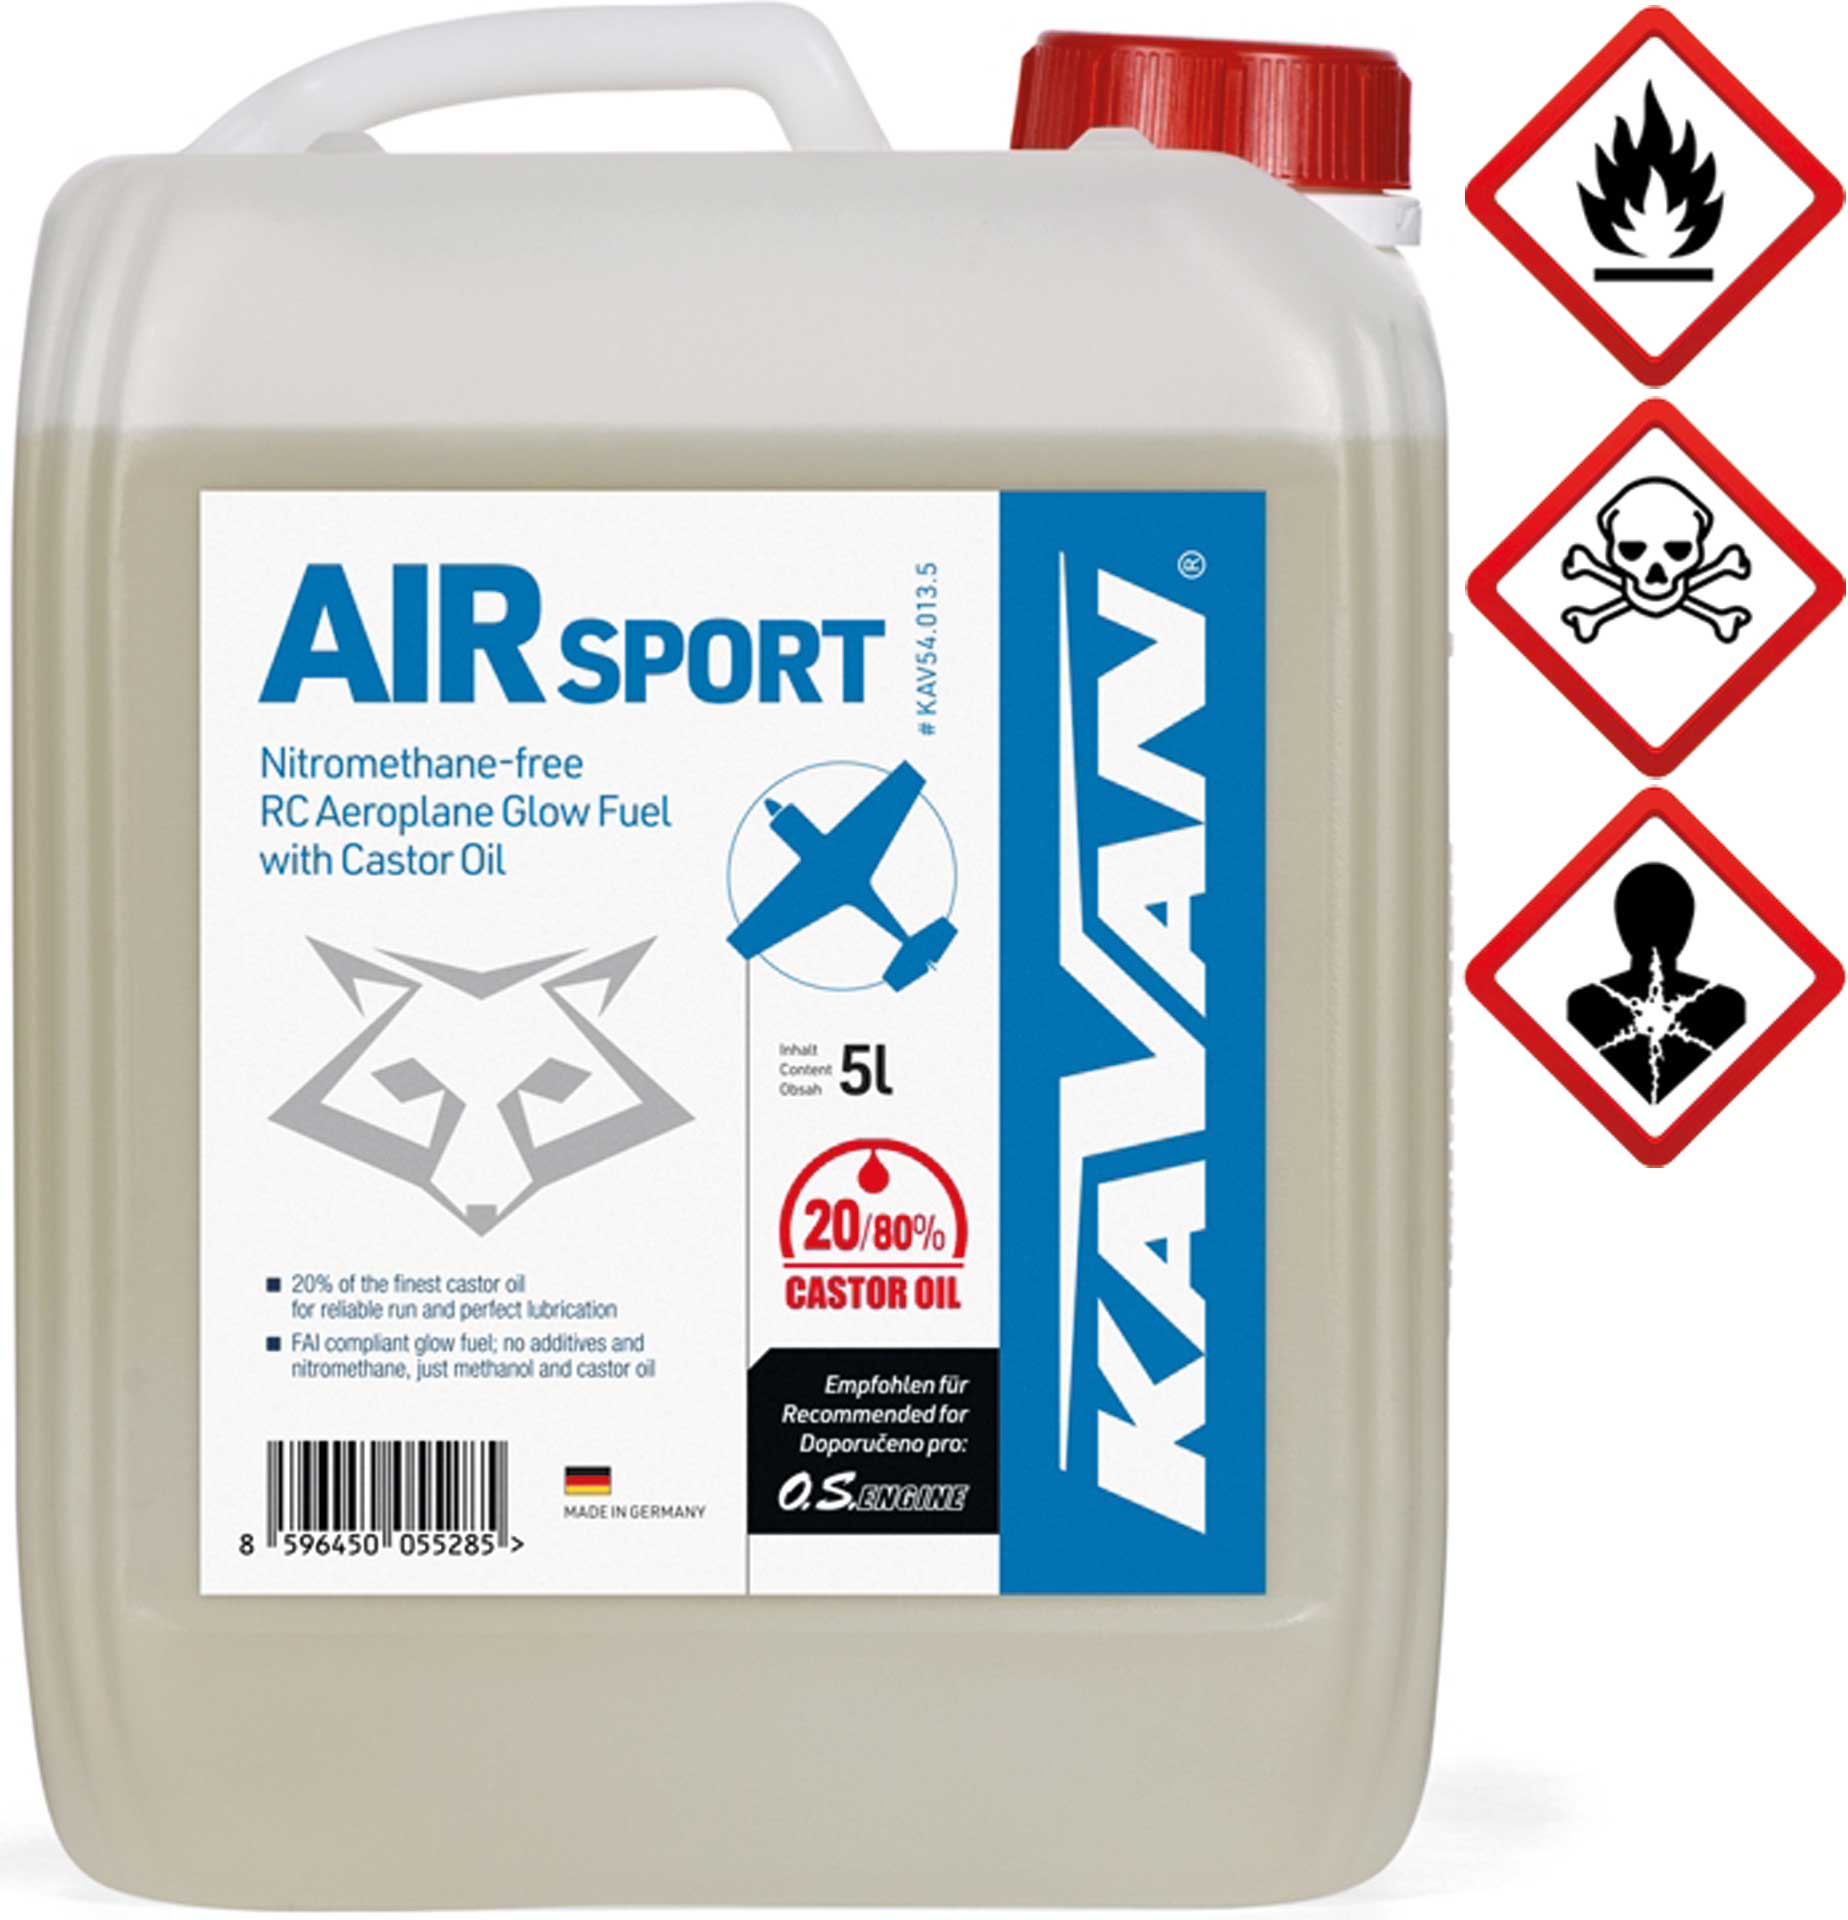 KAVAN Air Sport 20/80 5 Liter Kraftstoff, Sprit, Treibstoff für Glühzünder-Motoren